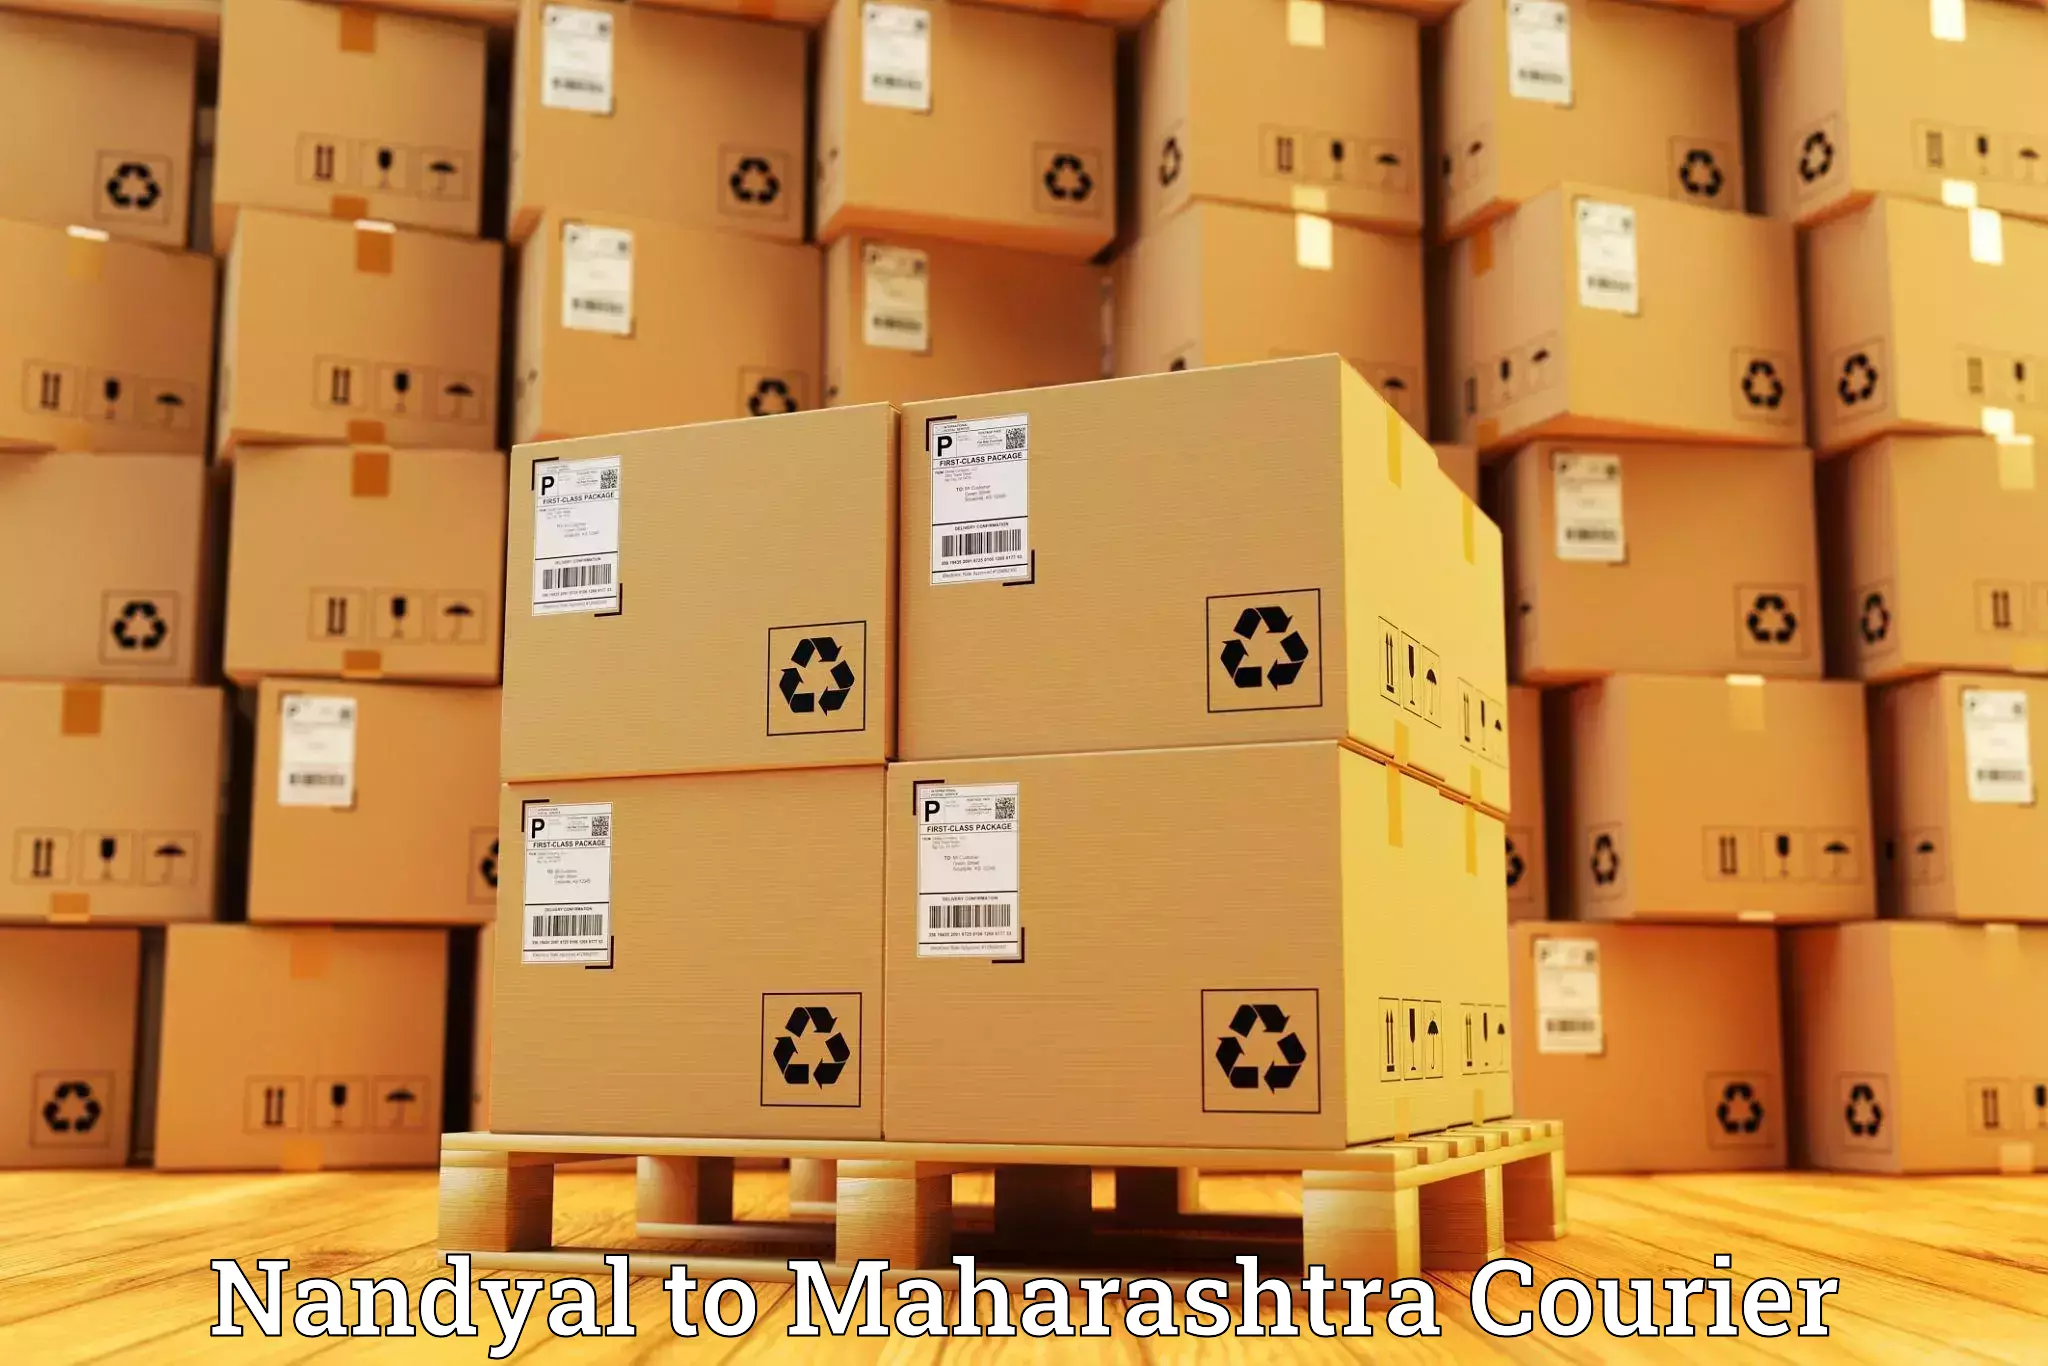 Smart shipping technology Nandyal to Baramati